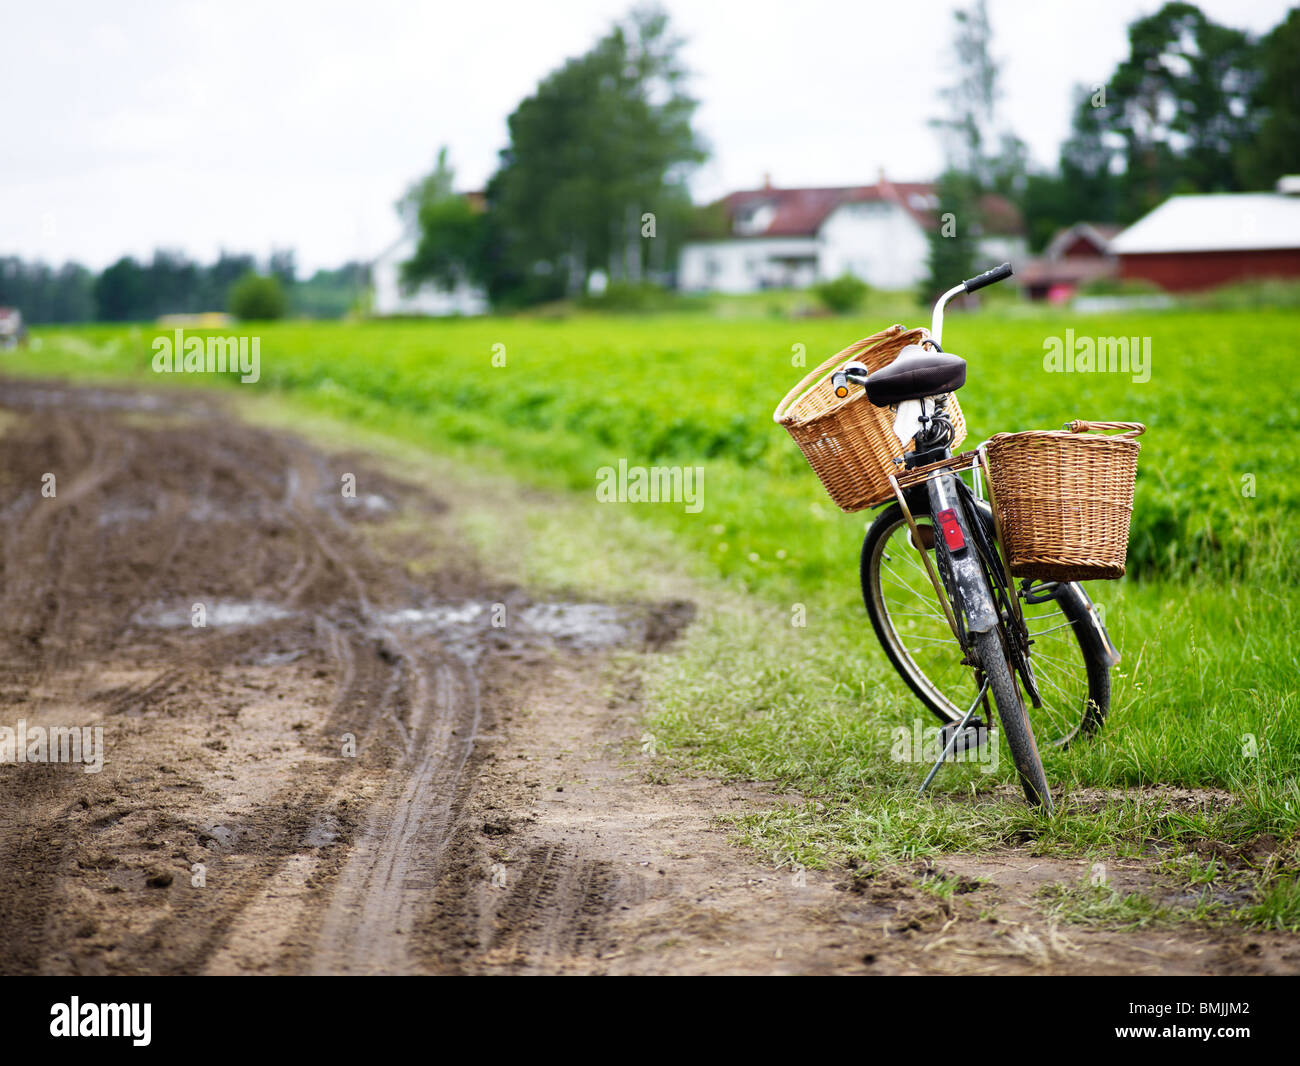 La Scandinavia, Svezia, Smaland, bicicletta accanto alla strada sterrata Foto Stock